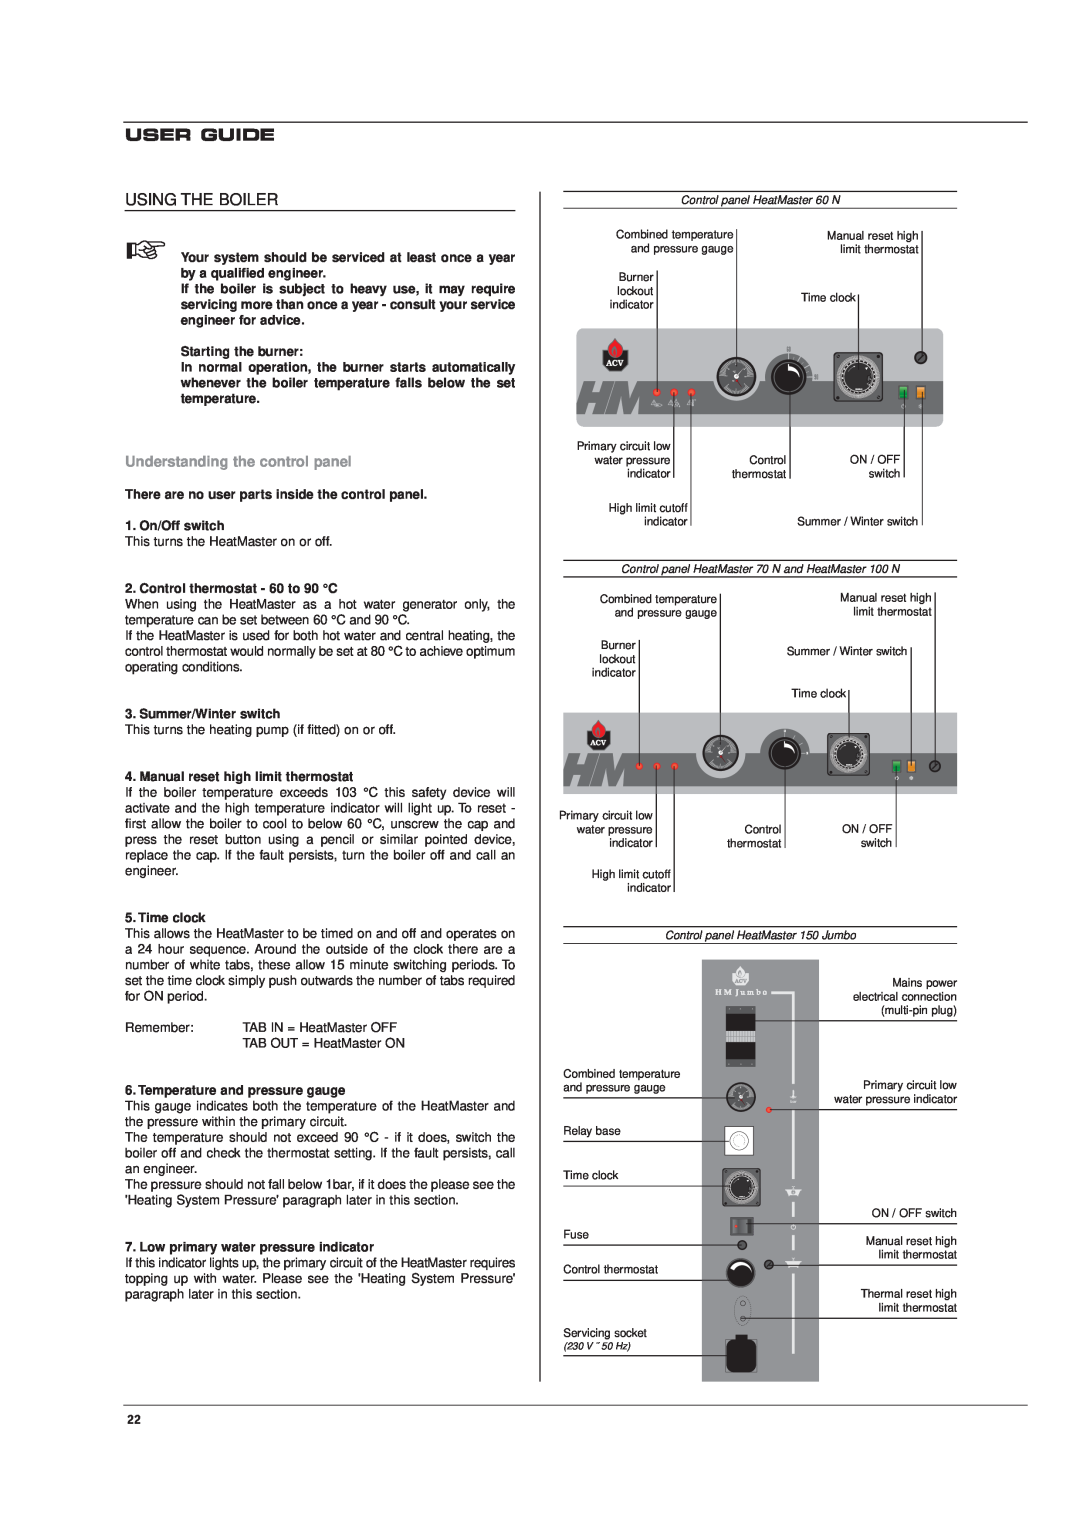 Heatmaster 70 N, HM 60 N, 150 JUMBO, 100 N manual User Guide, Using The Boiler, Understanding the control panel 